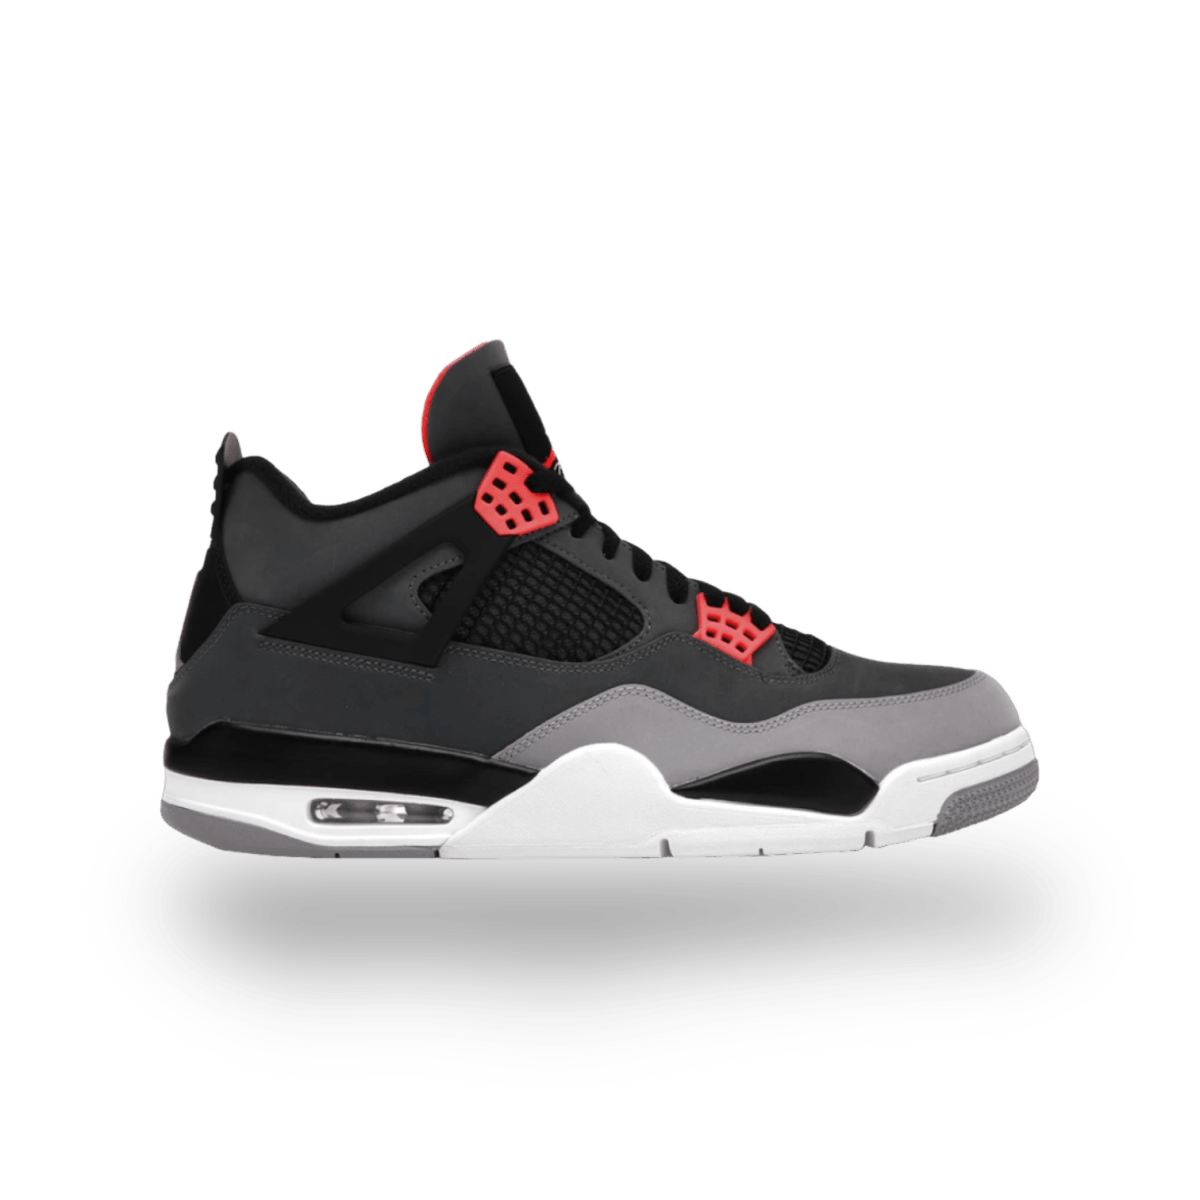 Jordan 4 Retro Infrared - Grade School - Mid Sneaker - Jawns on Fire Sneakers & Streetwear